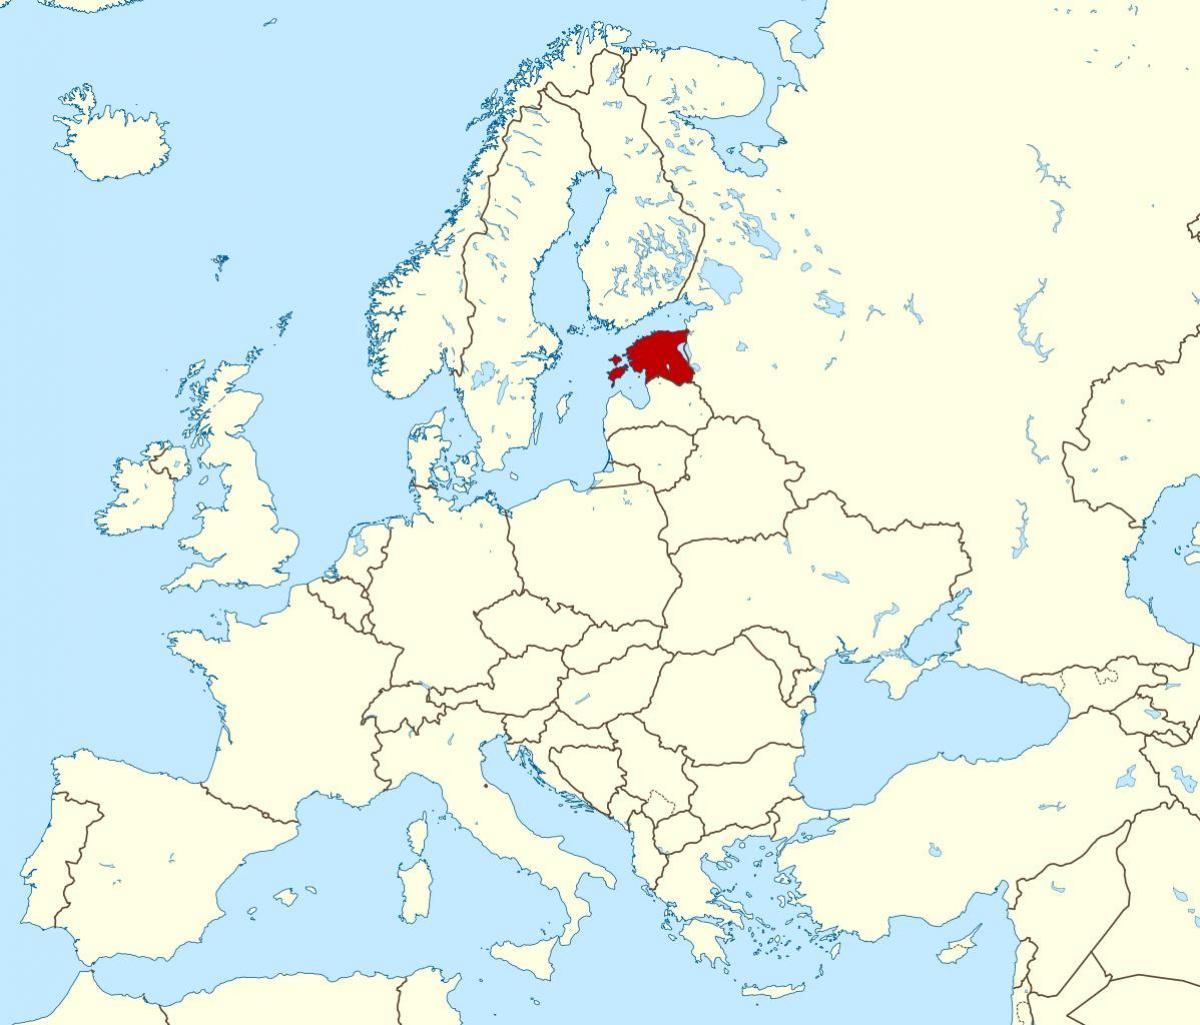 Εσθονία θέση στον παγκόσμιο χάρτη